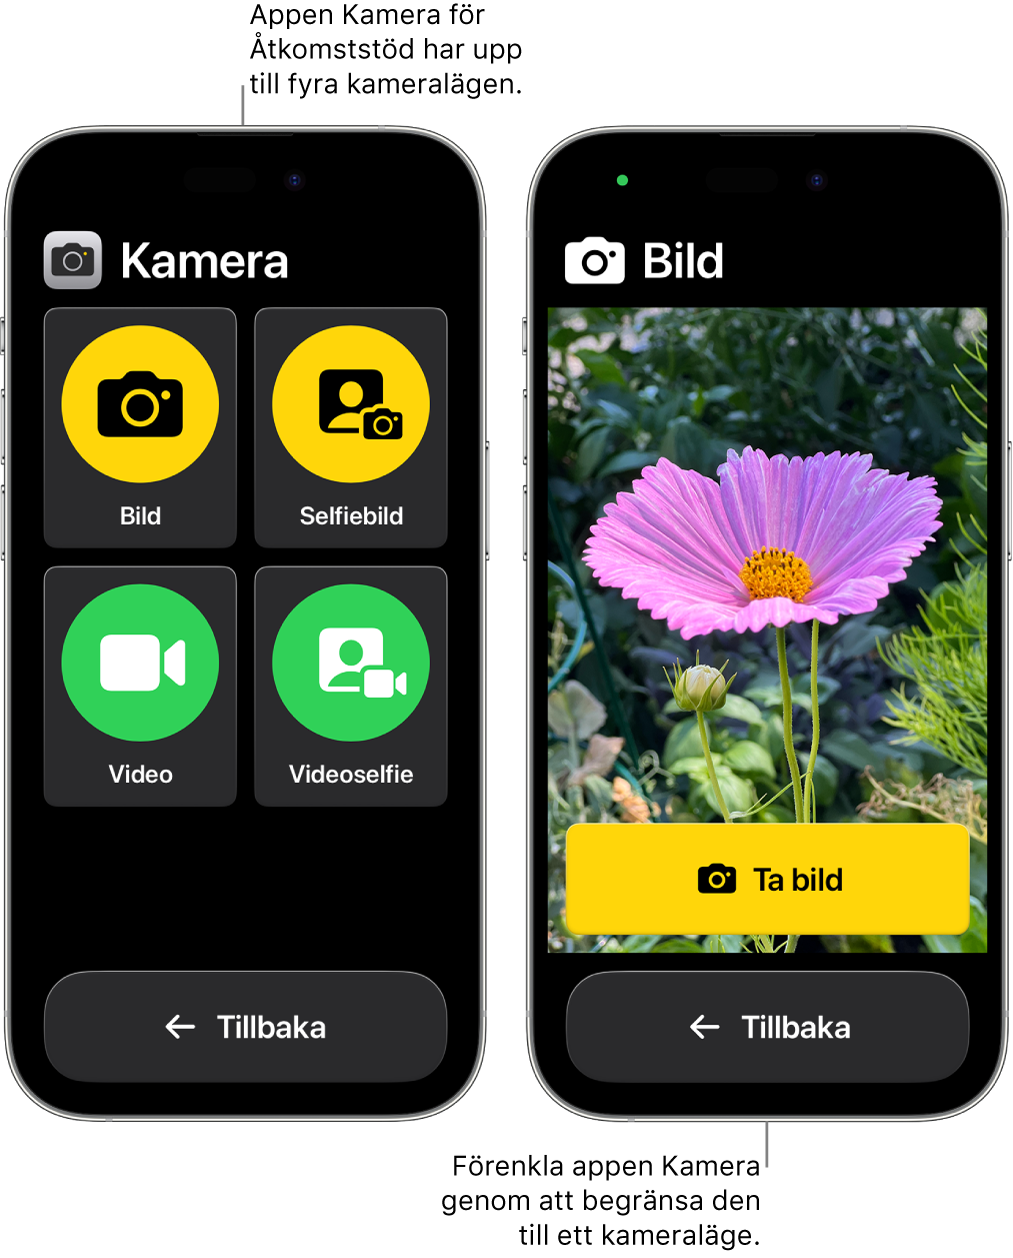 Två iPhone-enheter i Åtkomststöd. En iPhone visar appen Kamera med kameralägen som användaren kan välja mellan, som Video eller Selfiebild. Den andra visar appen Kamera med ett enda läge för att ta bilder.